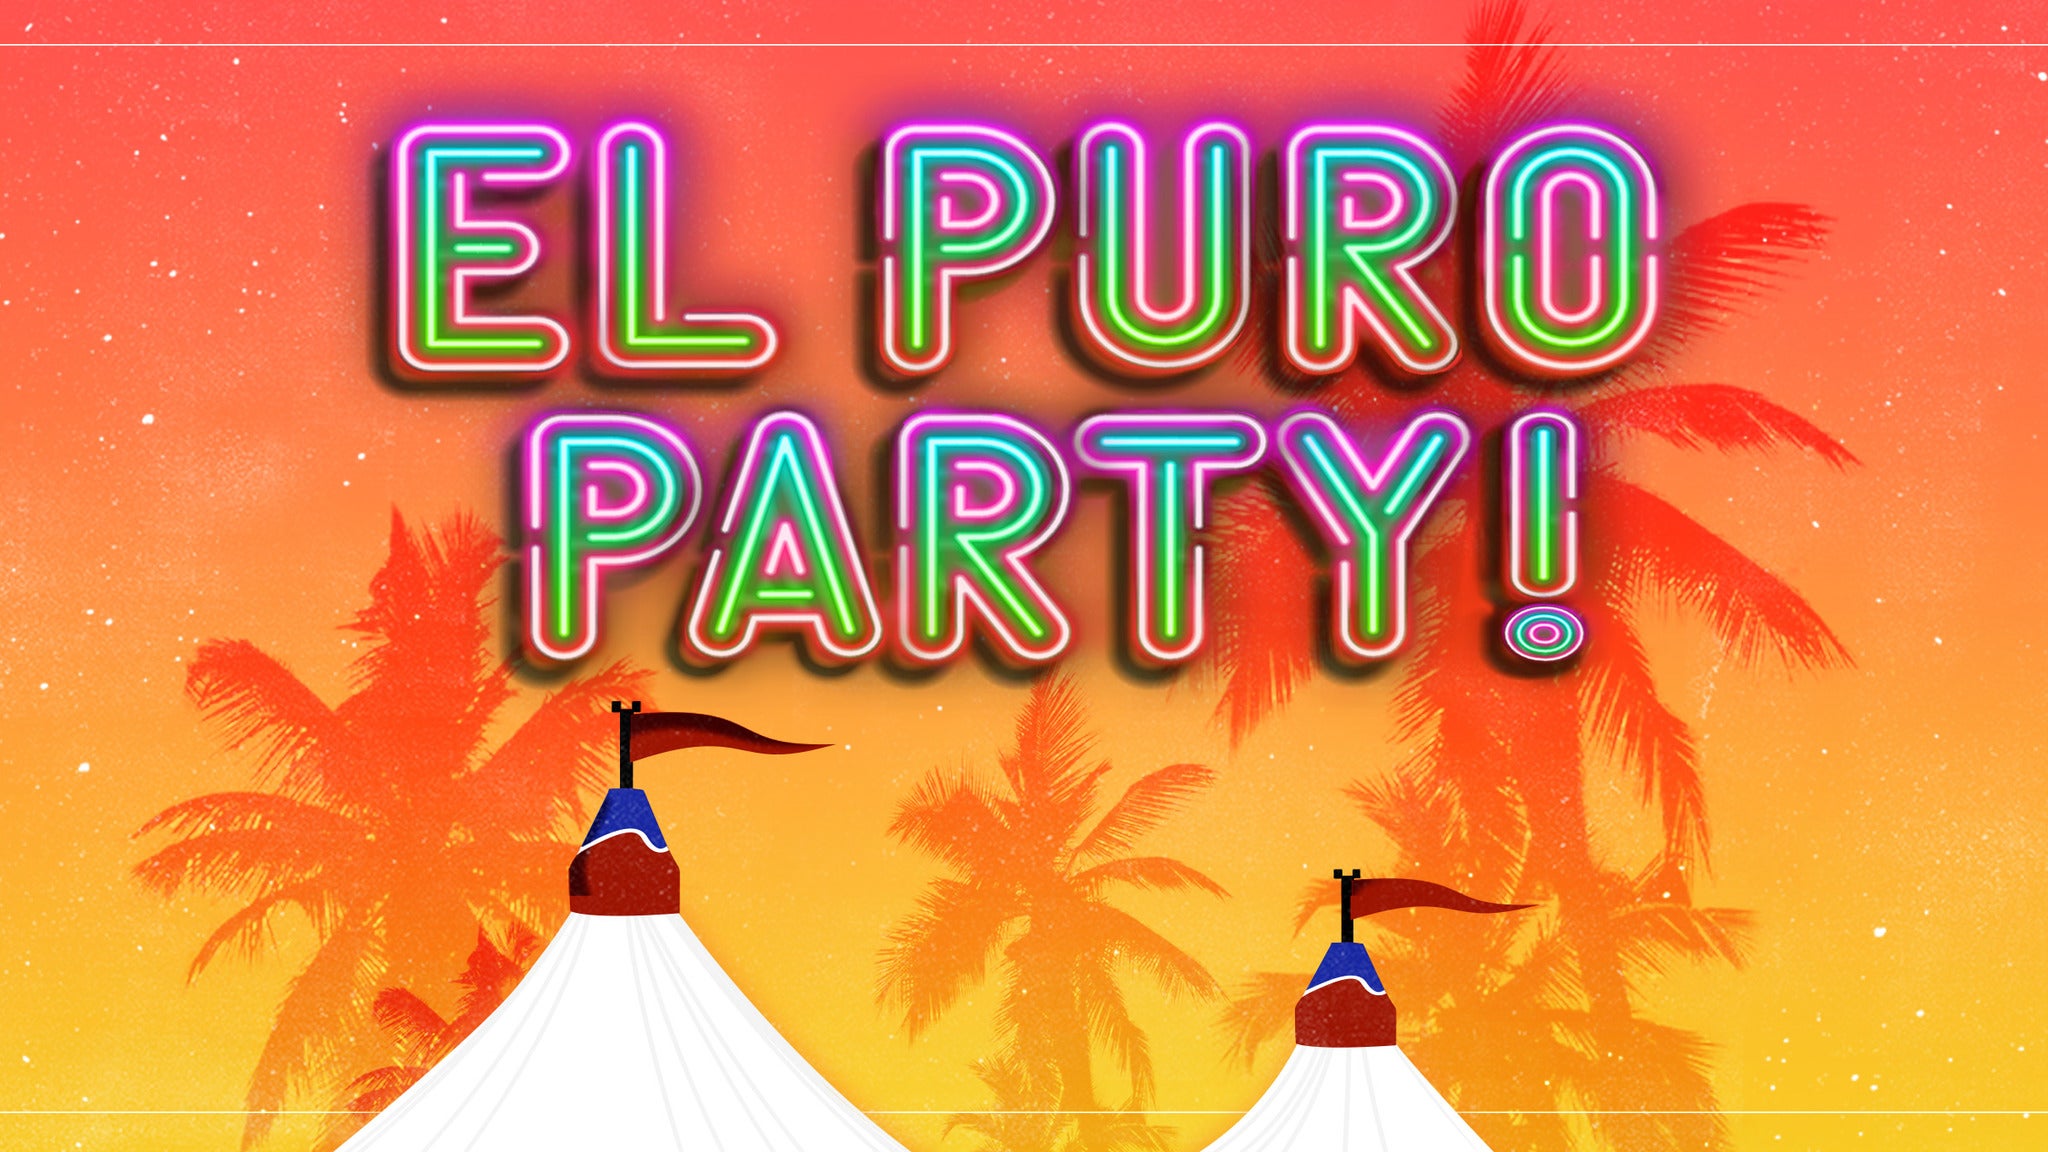 El Puro Party featuring Jowell y Randy, Nio Garcia, and more